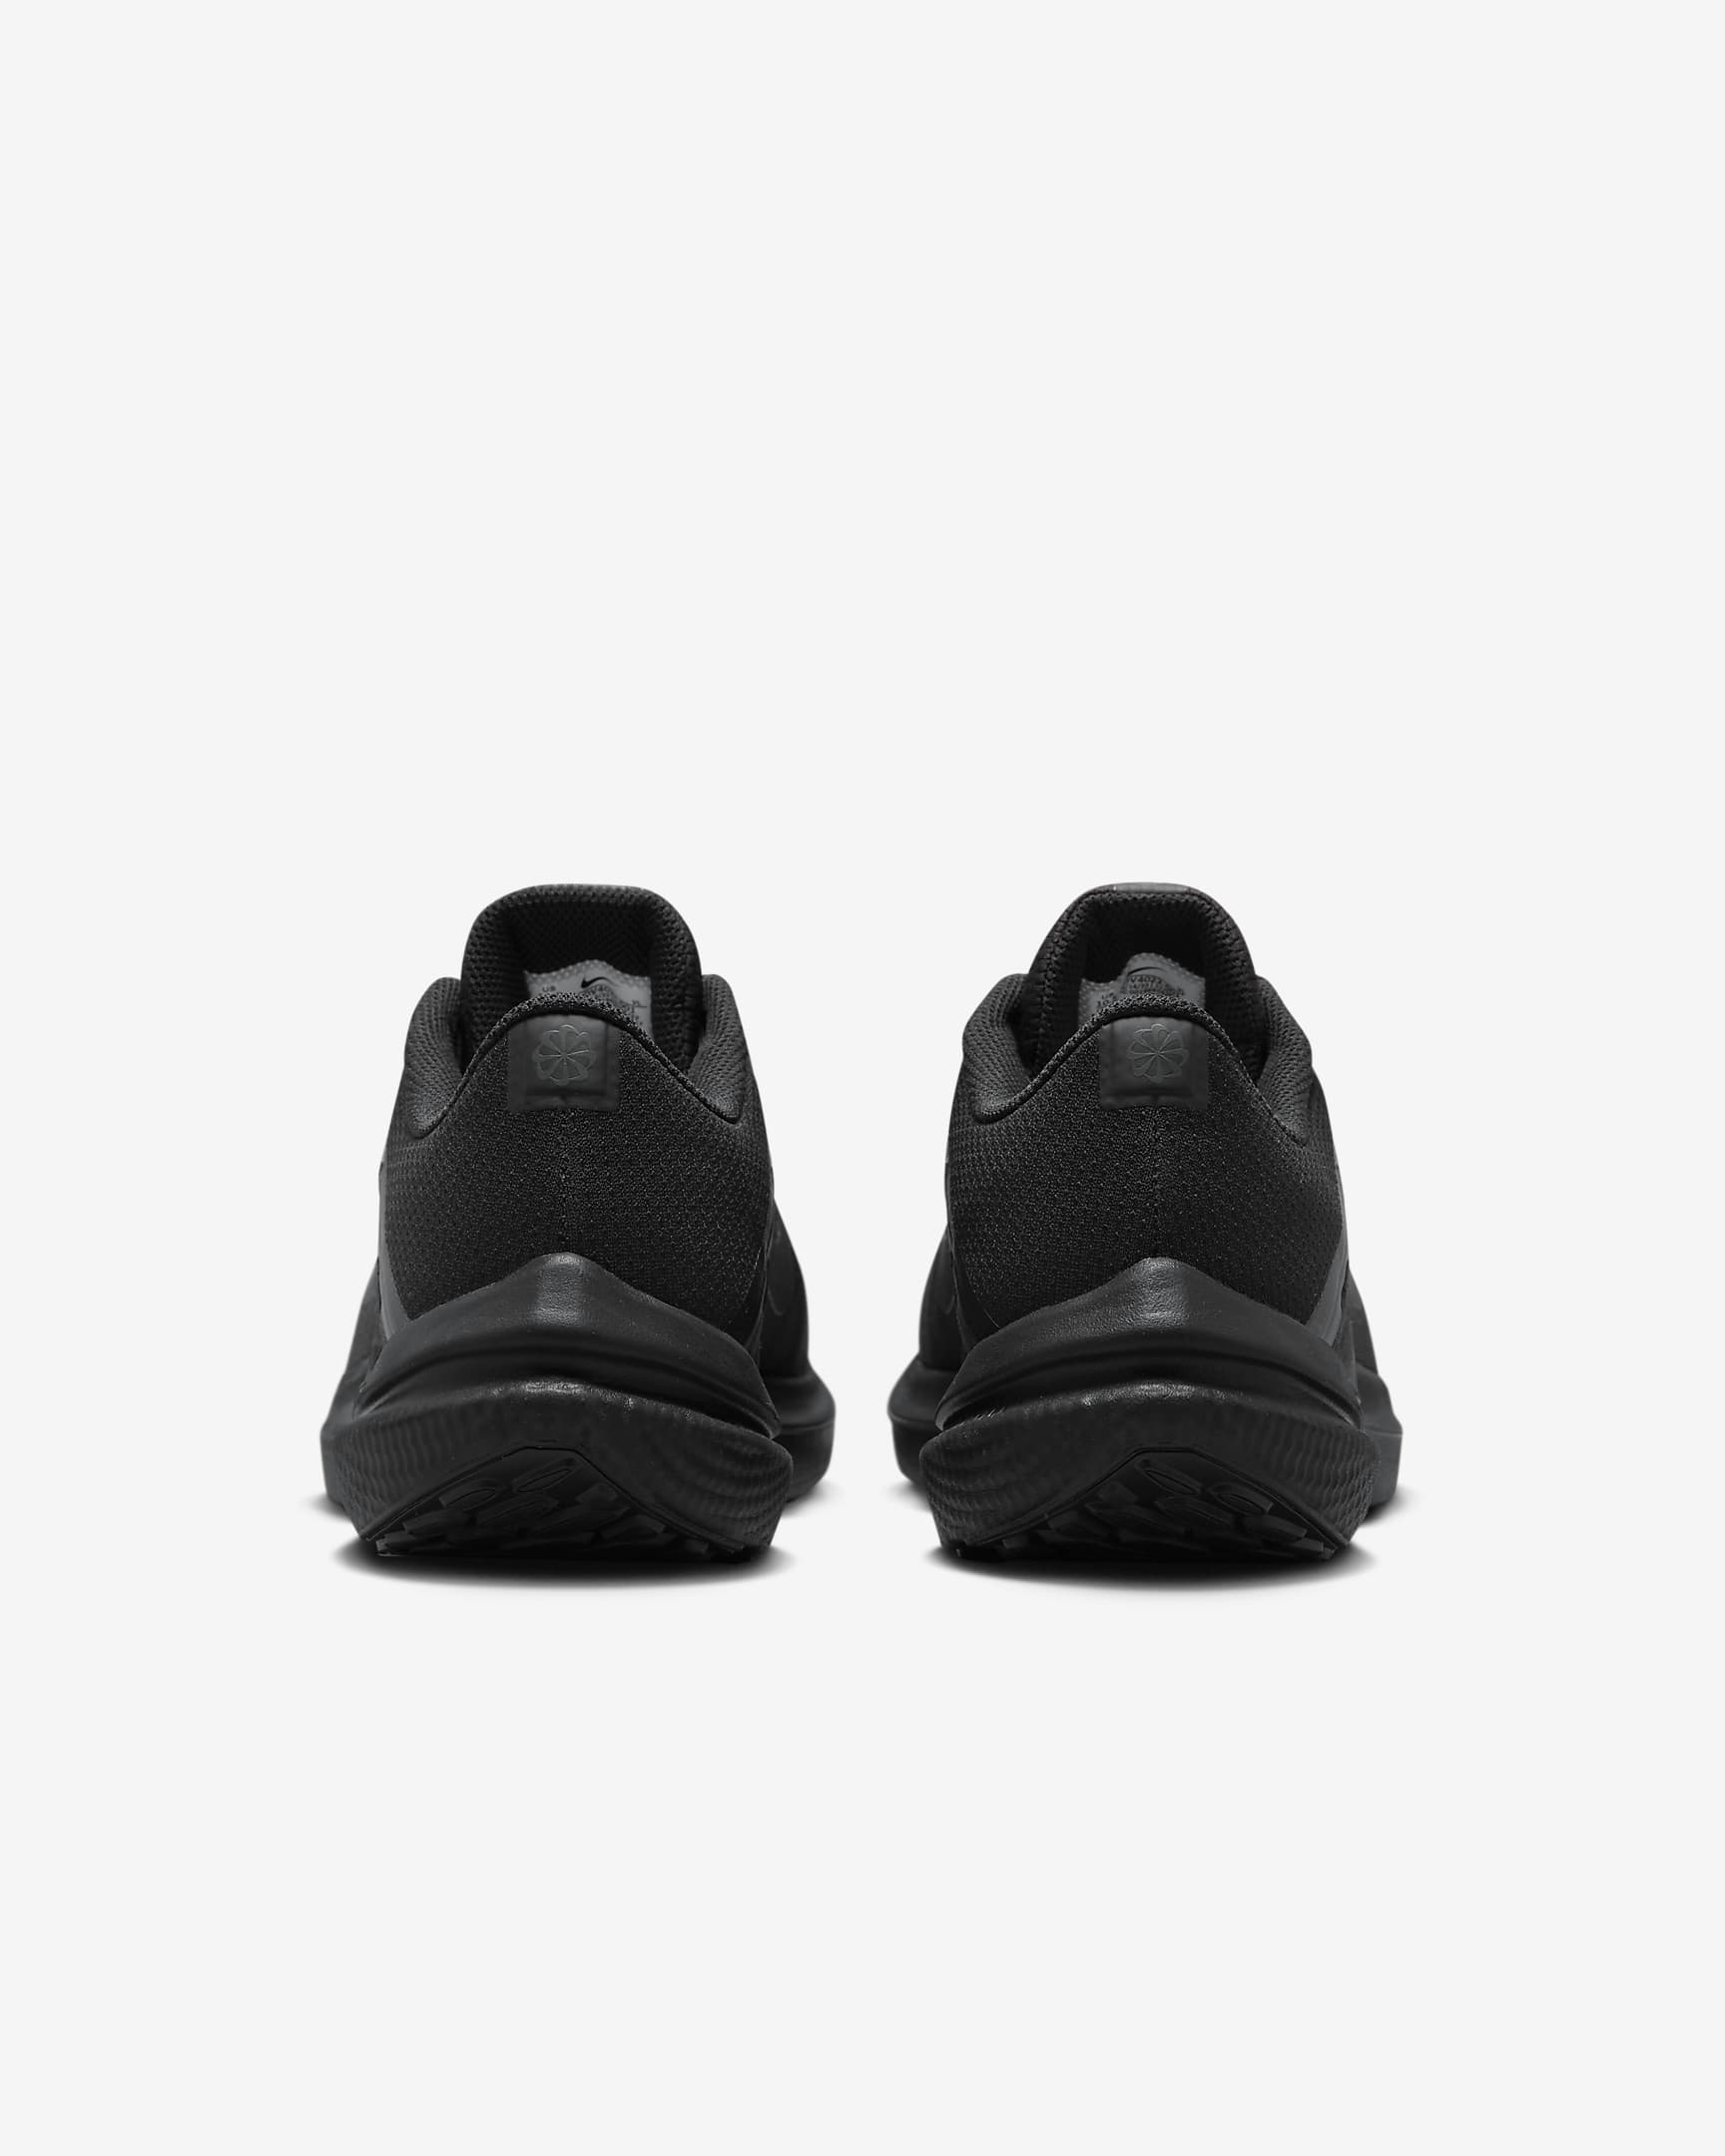 Nike running shoes, black ,men ,size 10